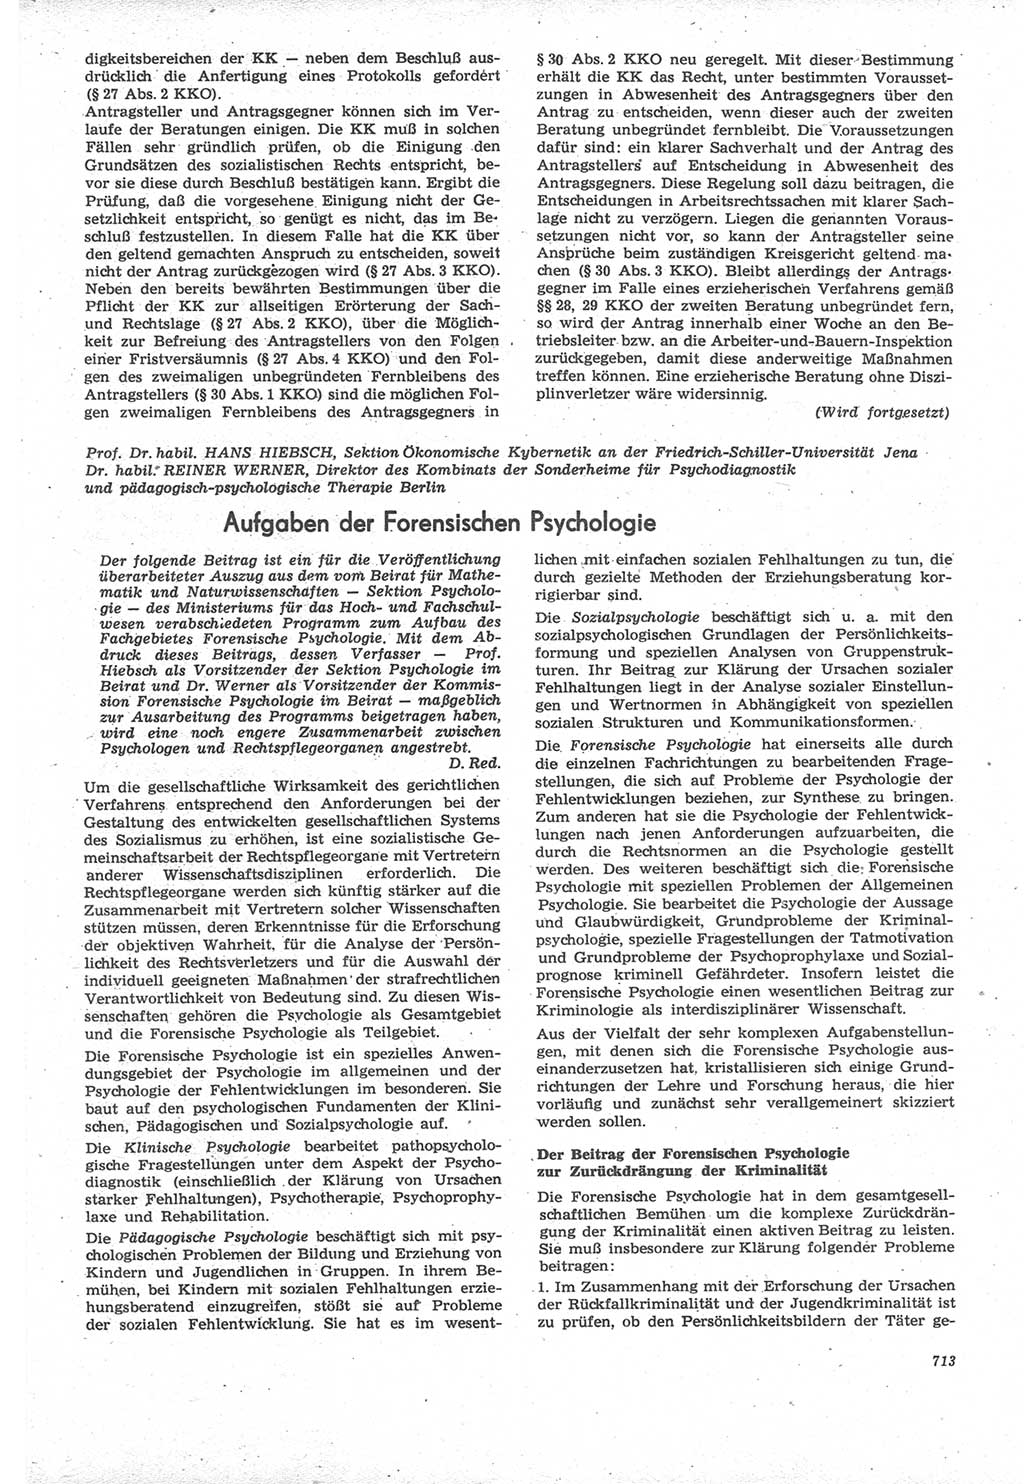 Neue Justiz (NJ), Zeitschrift für Recht und Rechtswissenschaft [Deutsche Demokratische Republik (DDR)], 22. Jahrgang 1968, Seite 713 (NJ DDR 1968, S. 713)